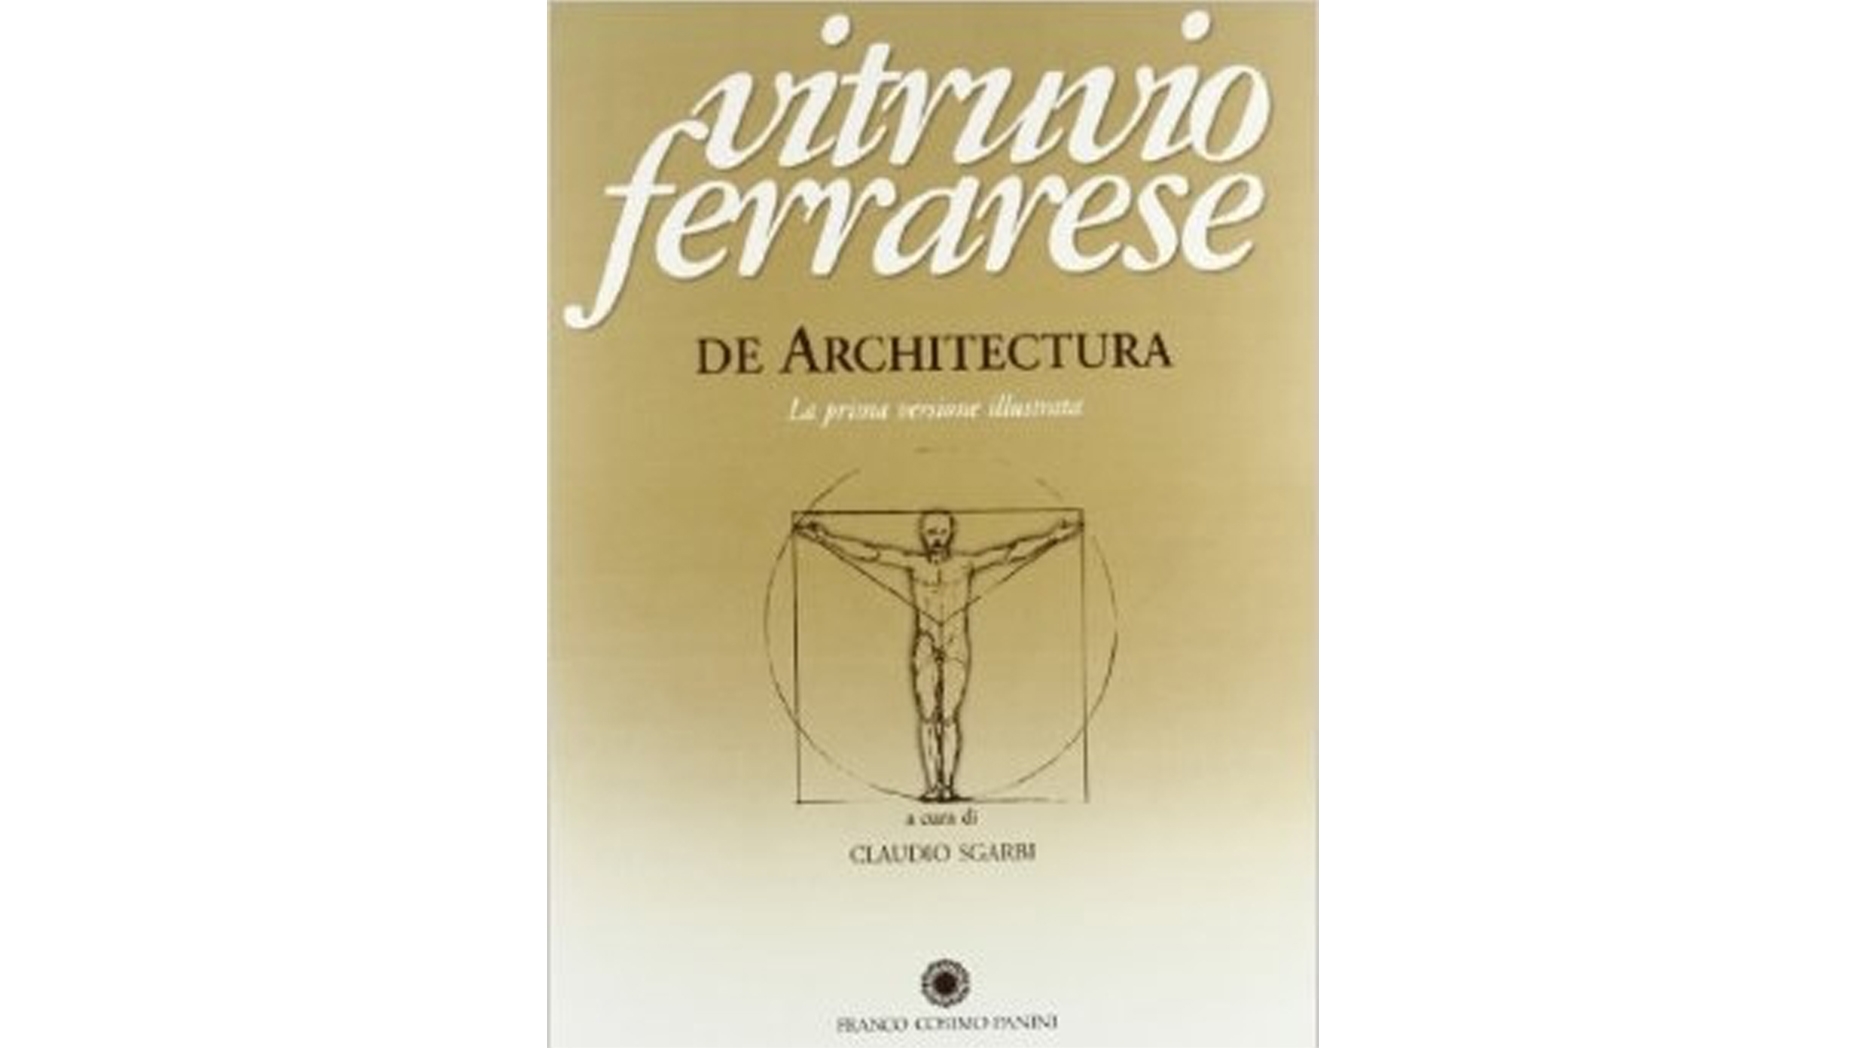 De Architectura book cover